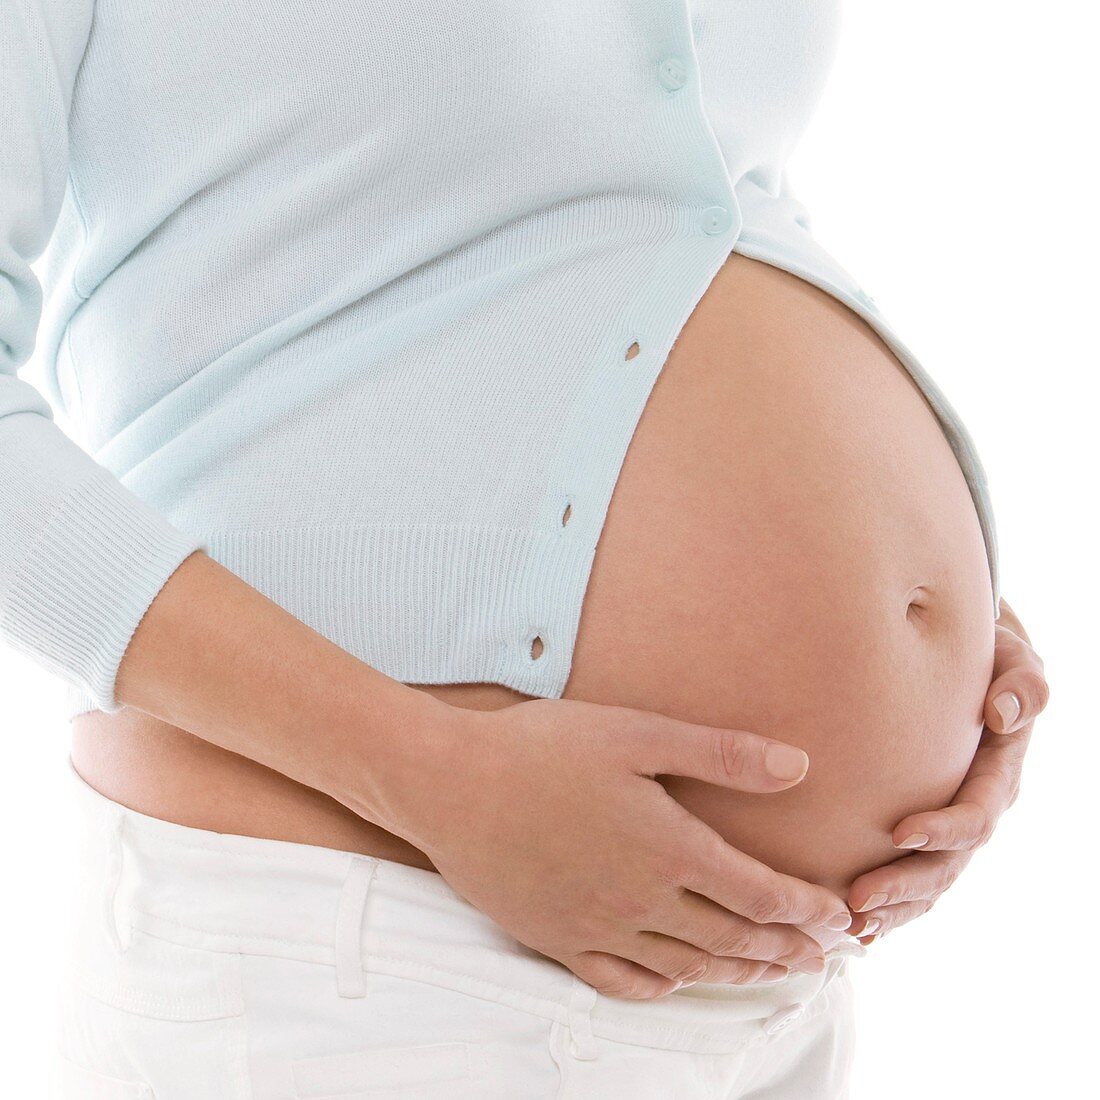 Pregnant woman's abdomen